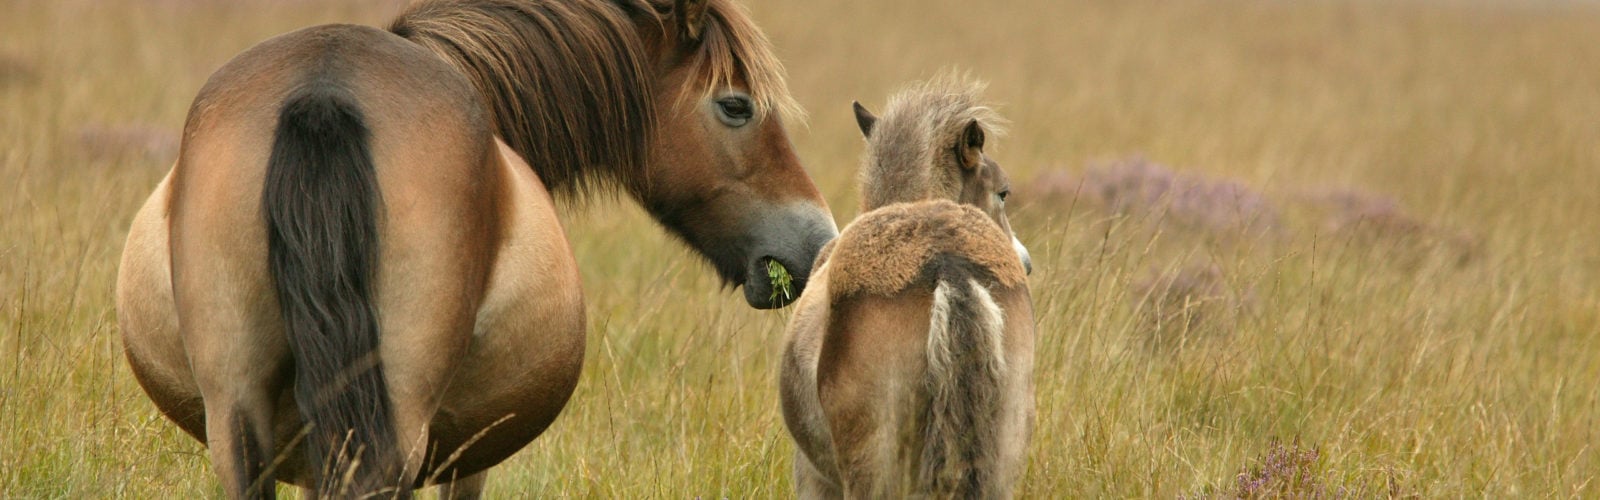 exmoor-pony